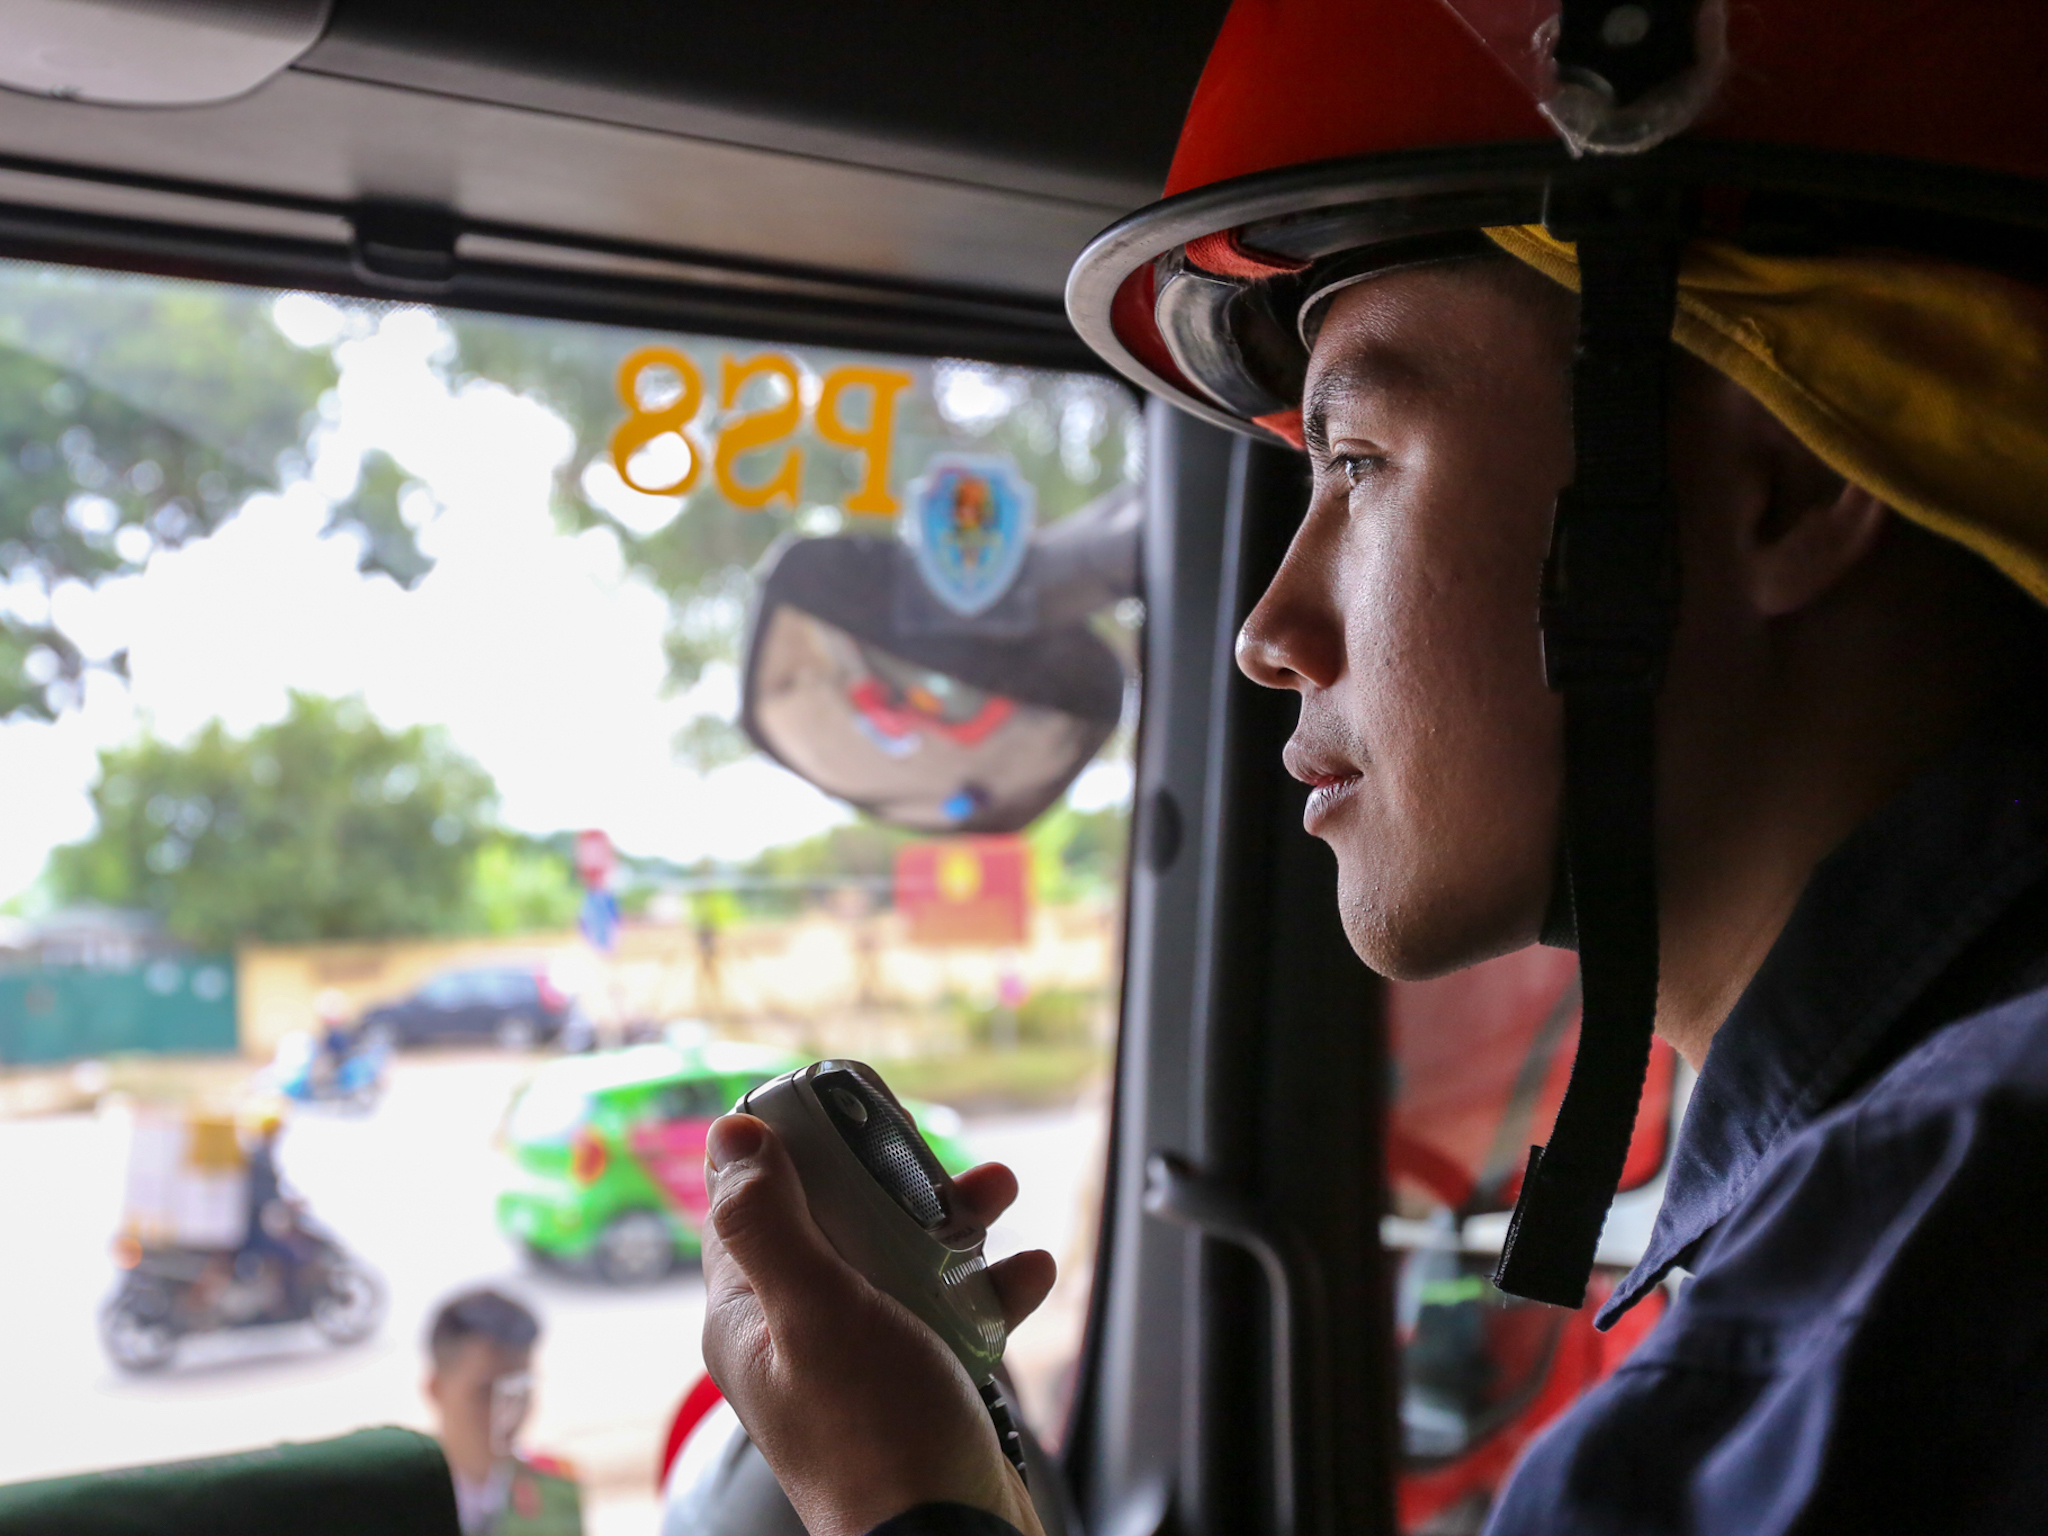 Phùng Trung Vũ là một chiến sỹ trẻ thuộc phòng Cảnh sát PCCC và Cứu nạn cứu hộ quận Hoàng Mai. (Ảnh: Minh Sơn/Vietnam+)